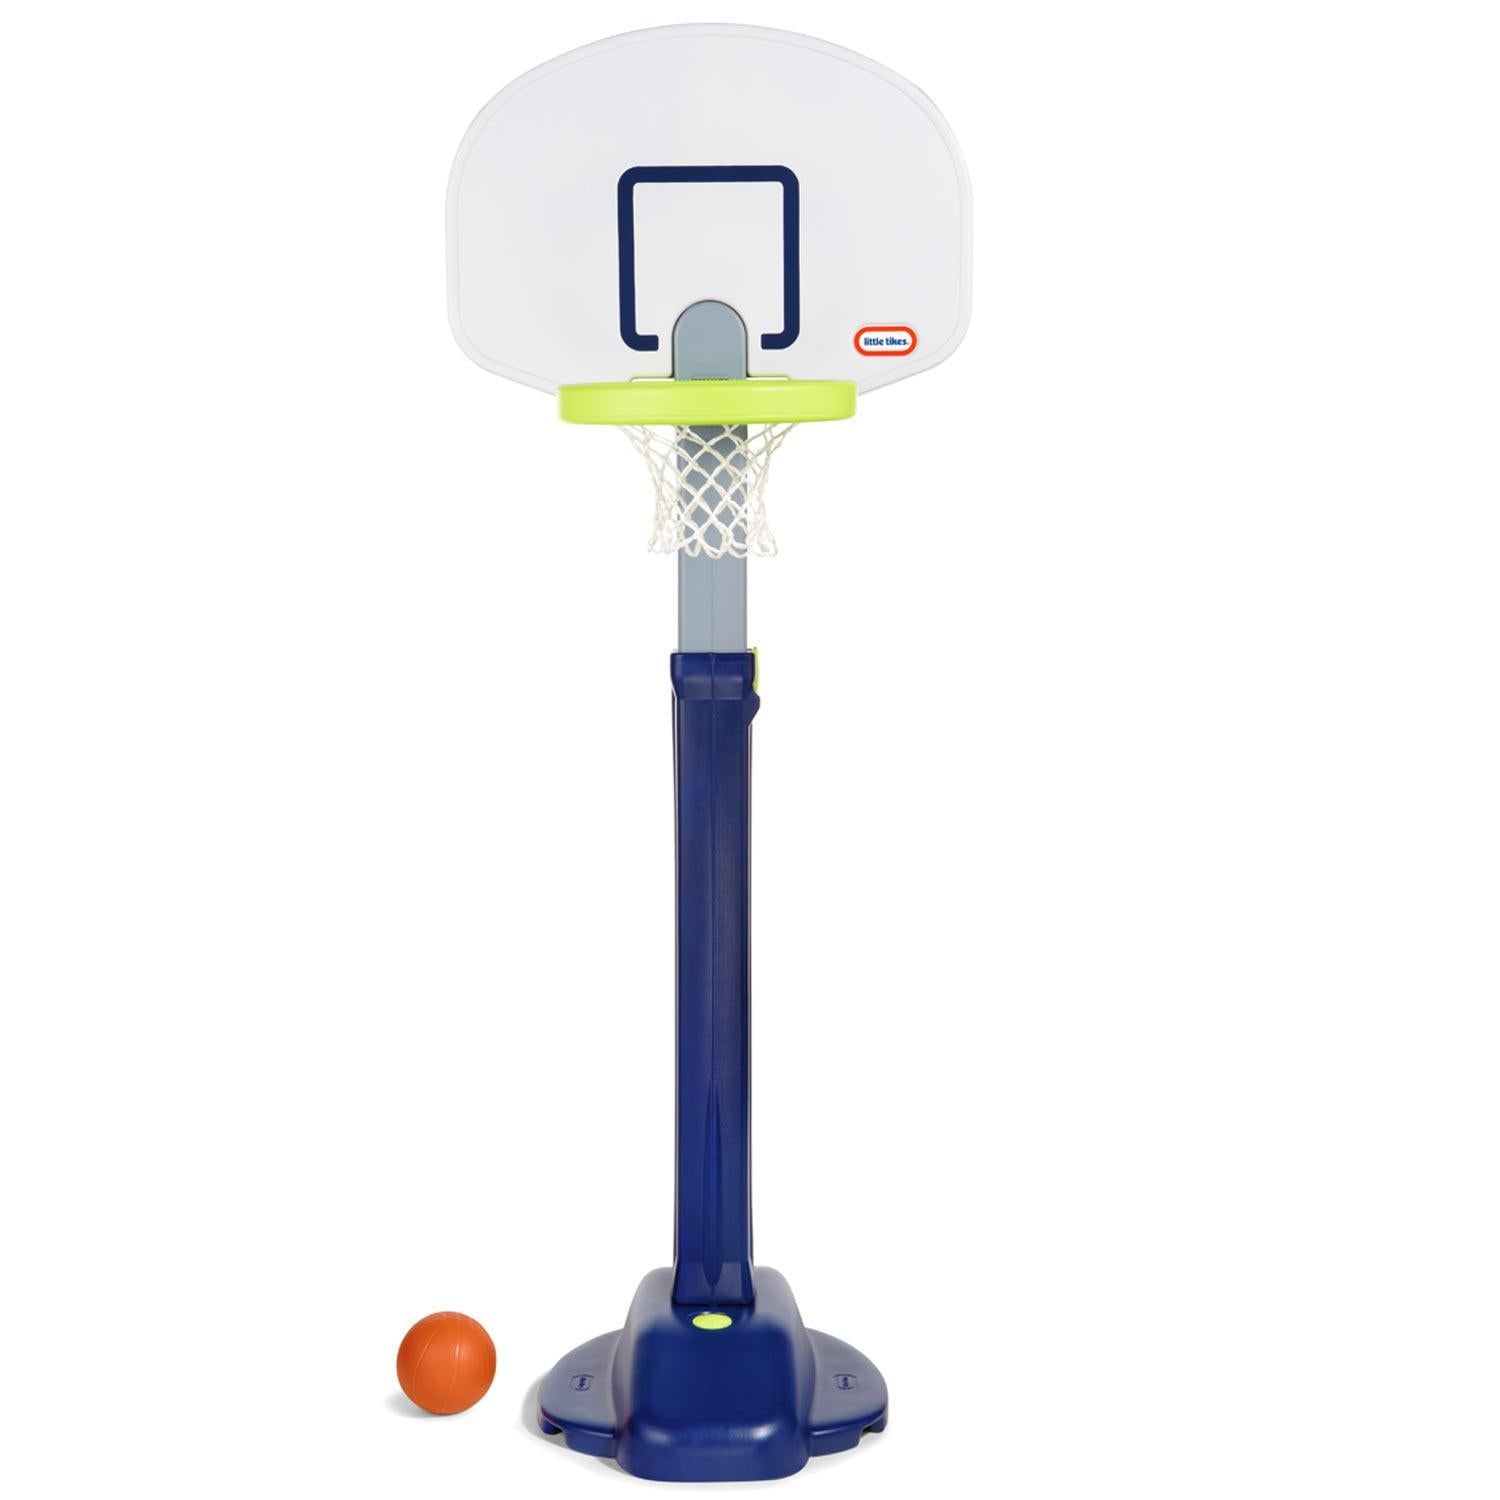 Little Tikes® Adjust 'n Jam Pro Basketball Set